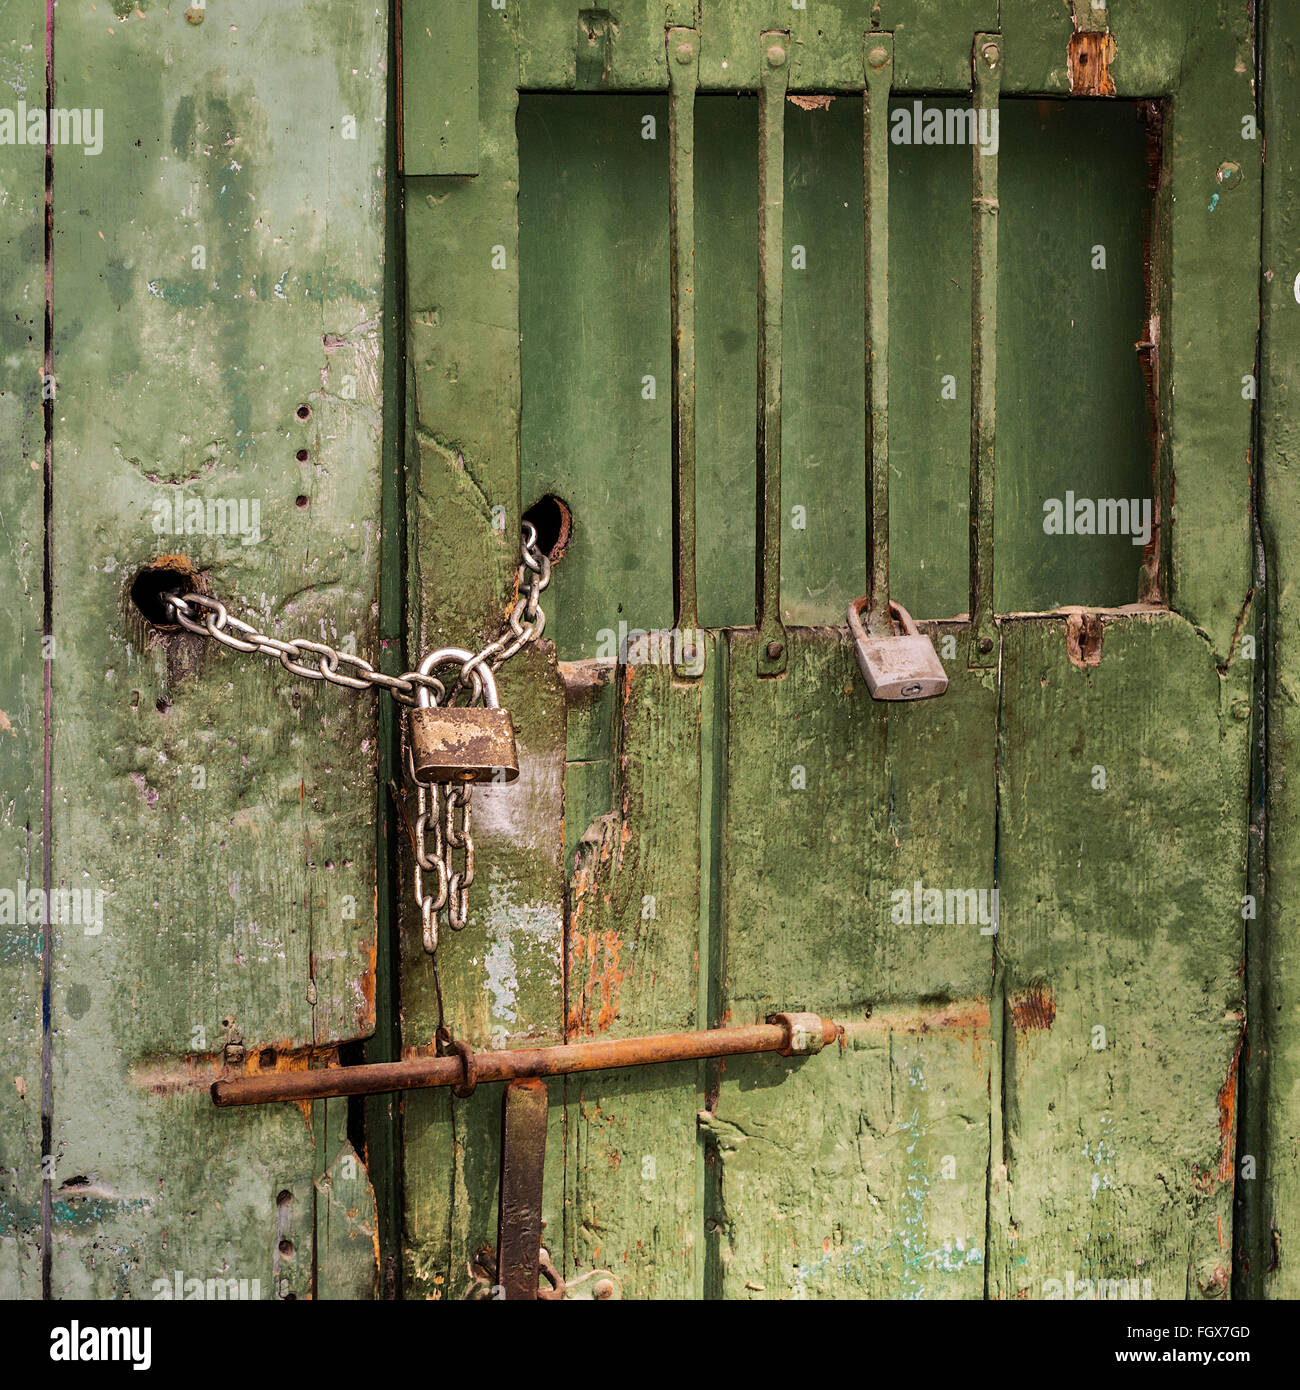 Door locked barred immagini e fotografie stock ad alta risoluzione - Alamy